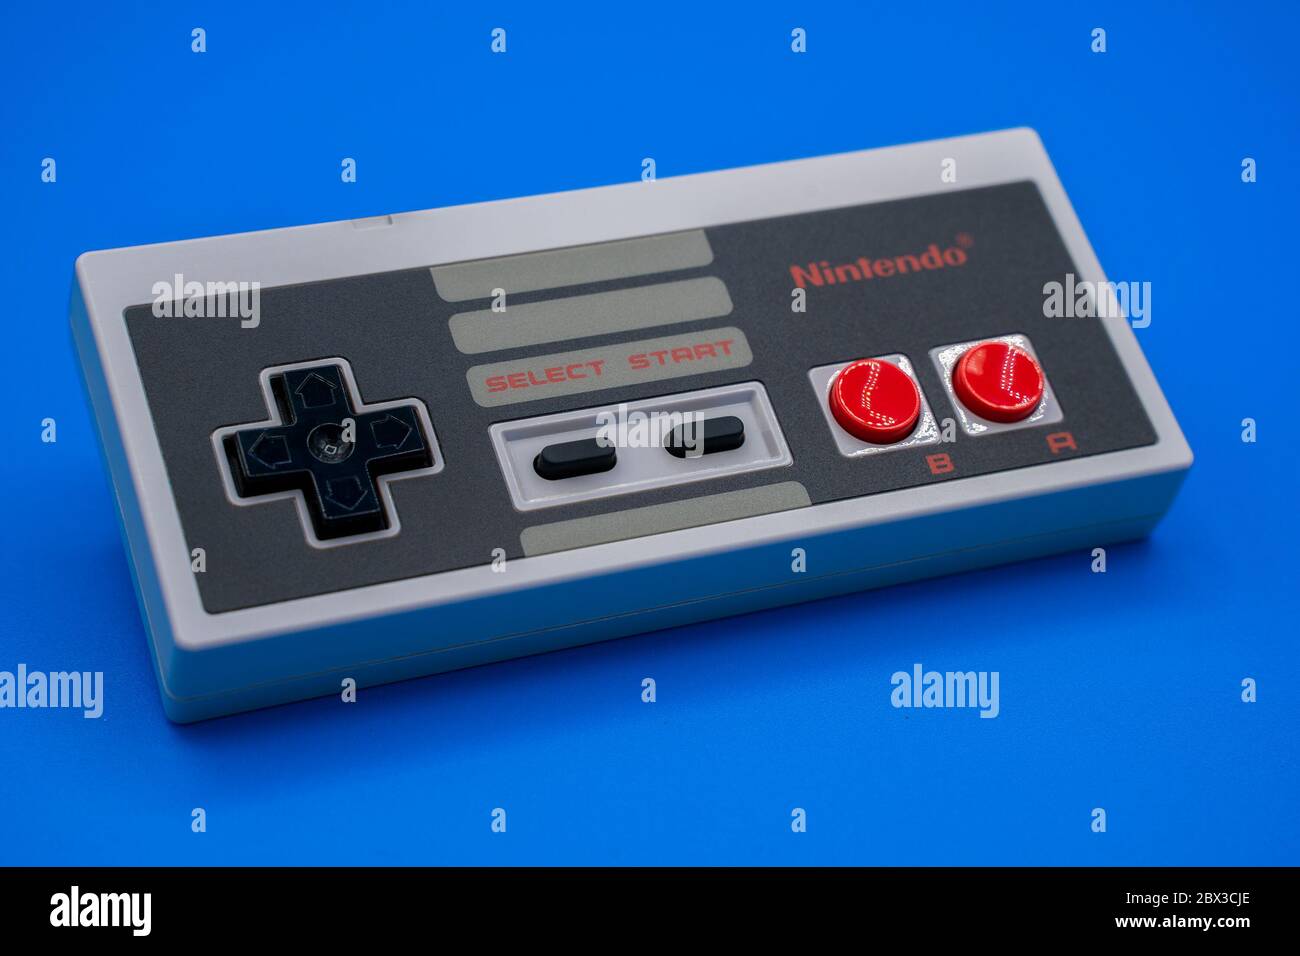 Nintendo nes immagini e fotografie stock ad alta risoluzione - Alamy